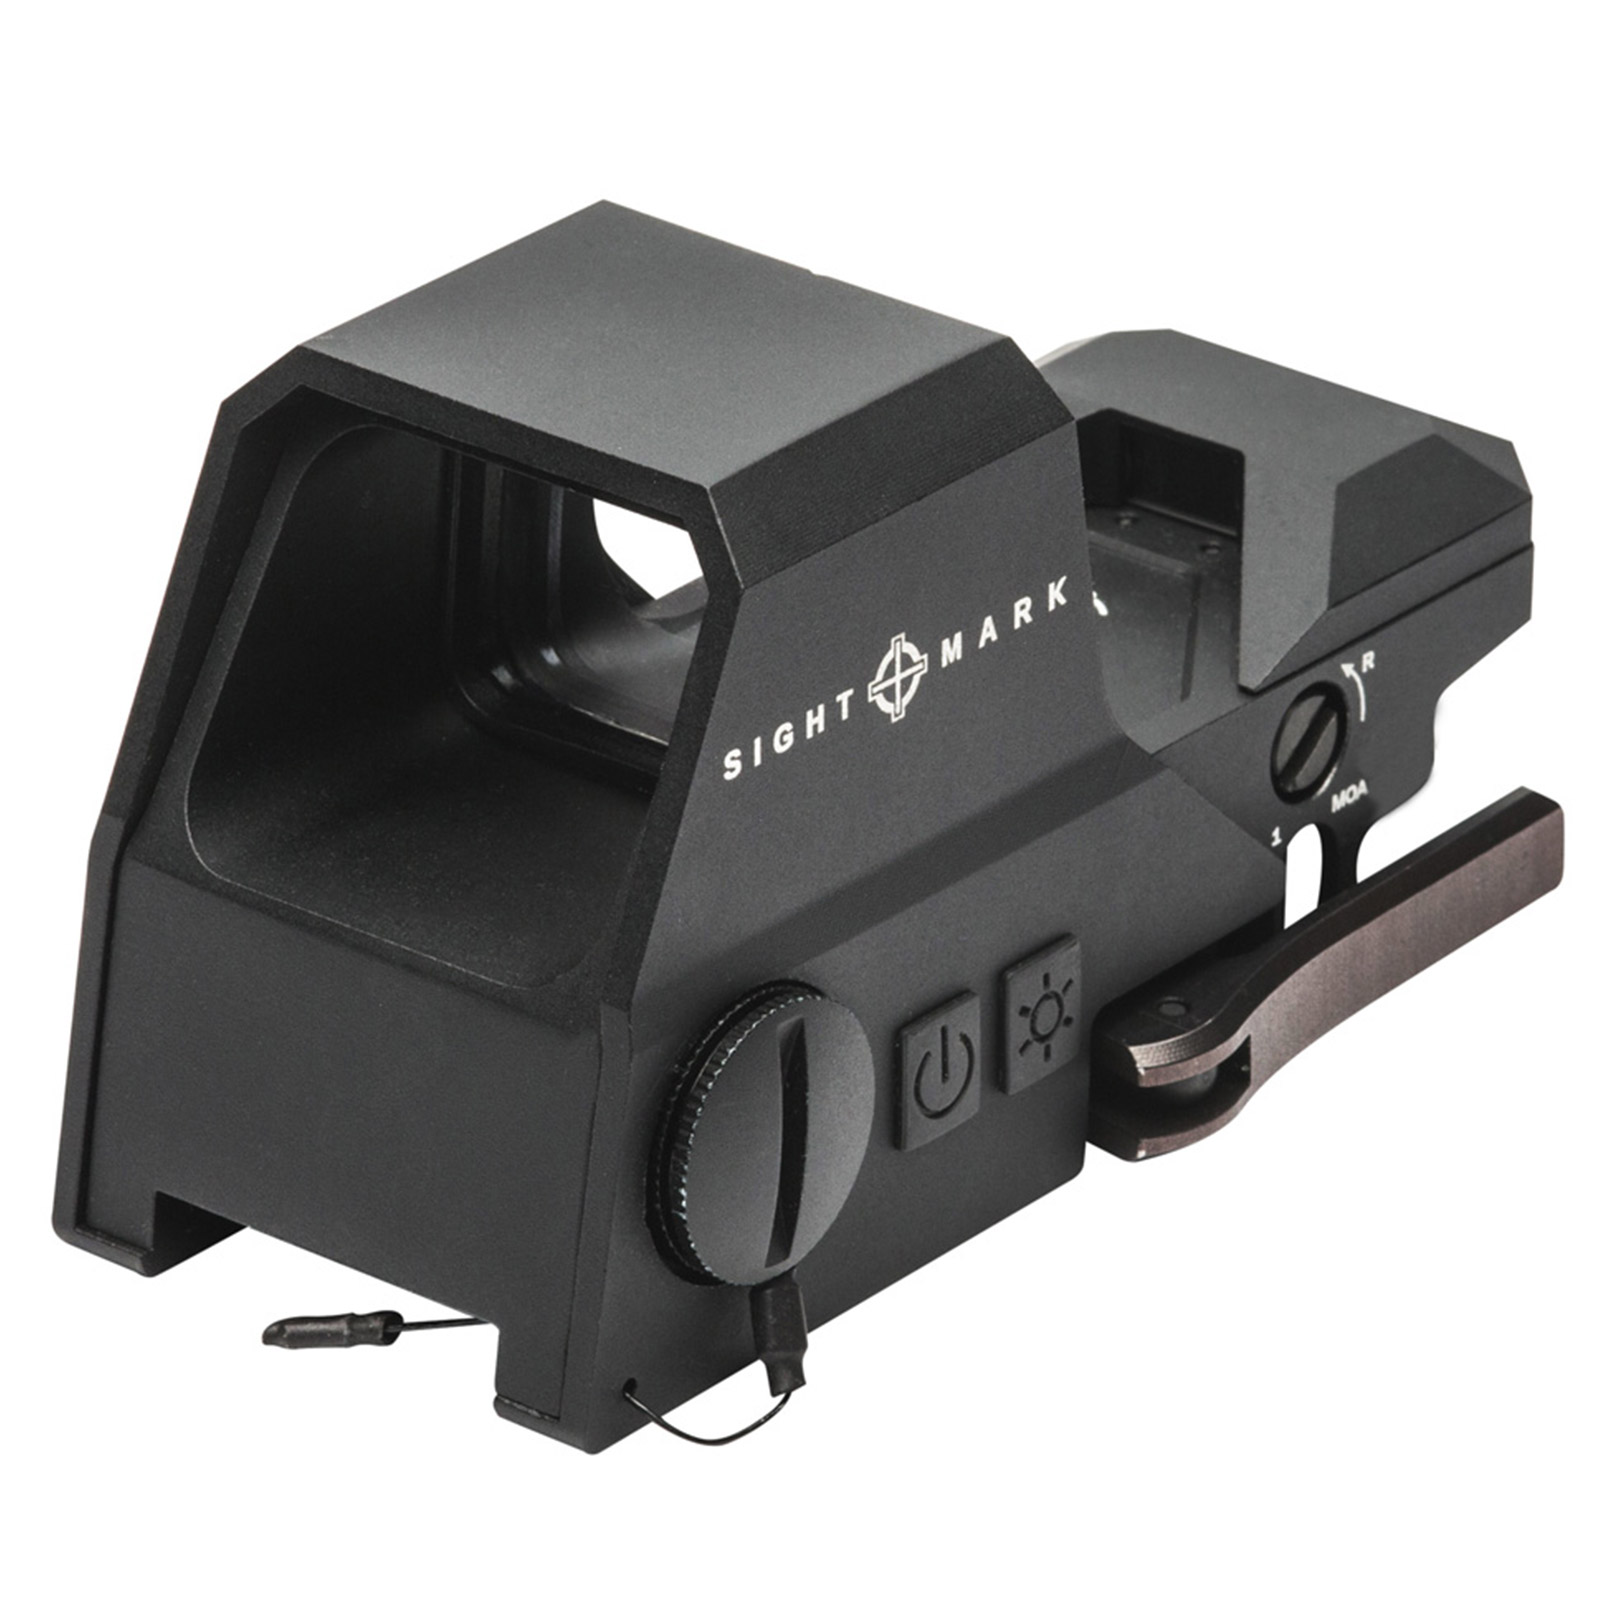 SightMark Rotpunktvisier Ultra Shot R-Spec Rotpunktvisier mit ausgesprochen langer Akkulaufzeit und 10 Helligkeitsstufen